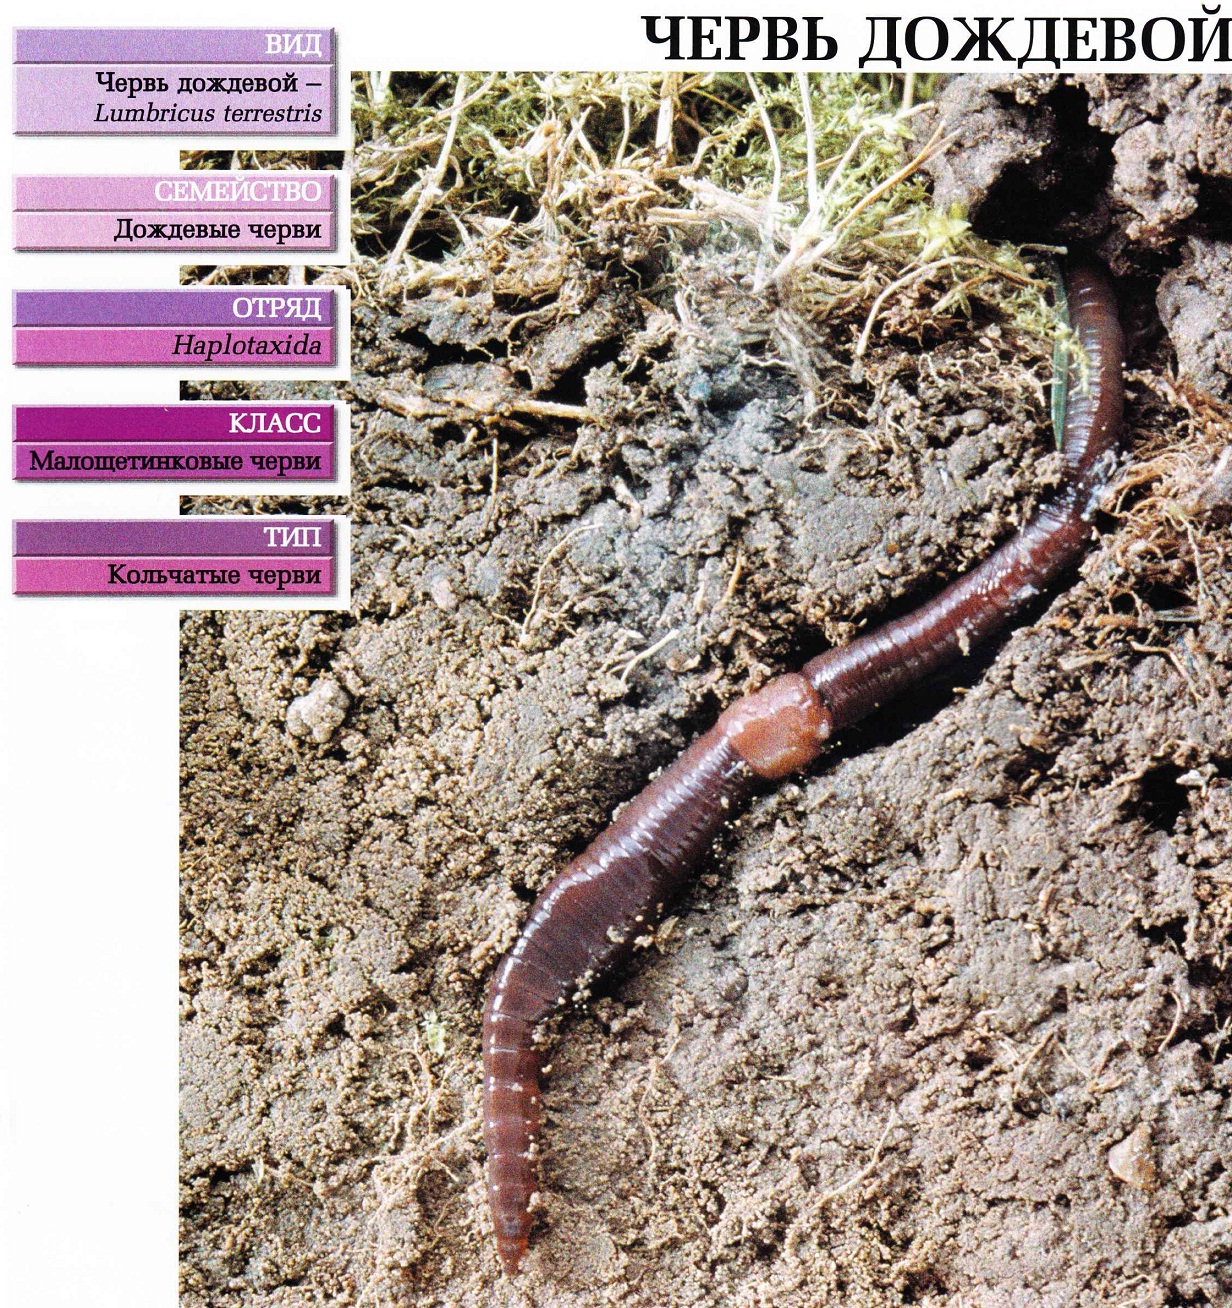 Систематика (научная классификация) червя дождевого. Lumbricus terrestris.